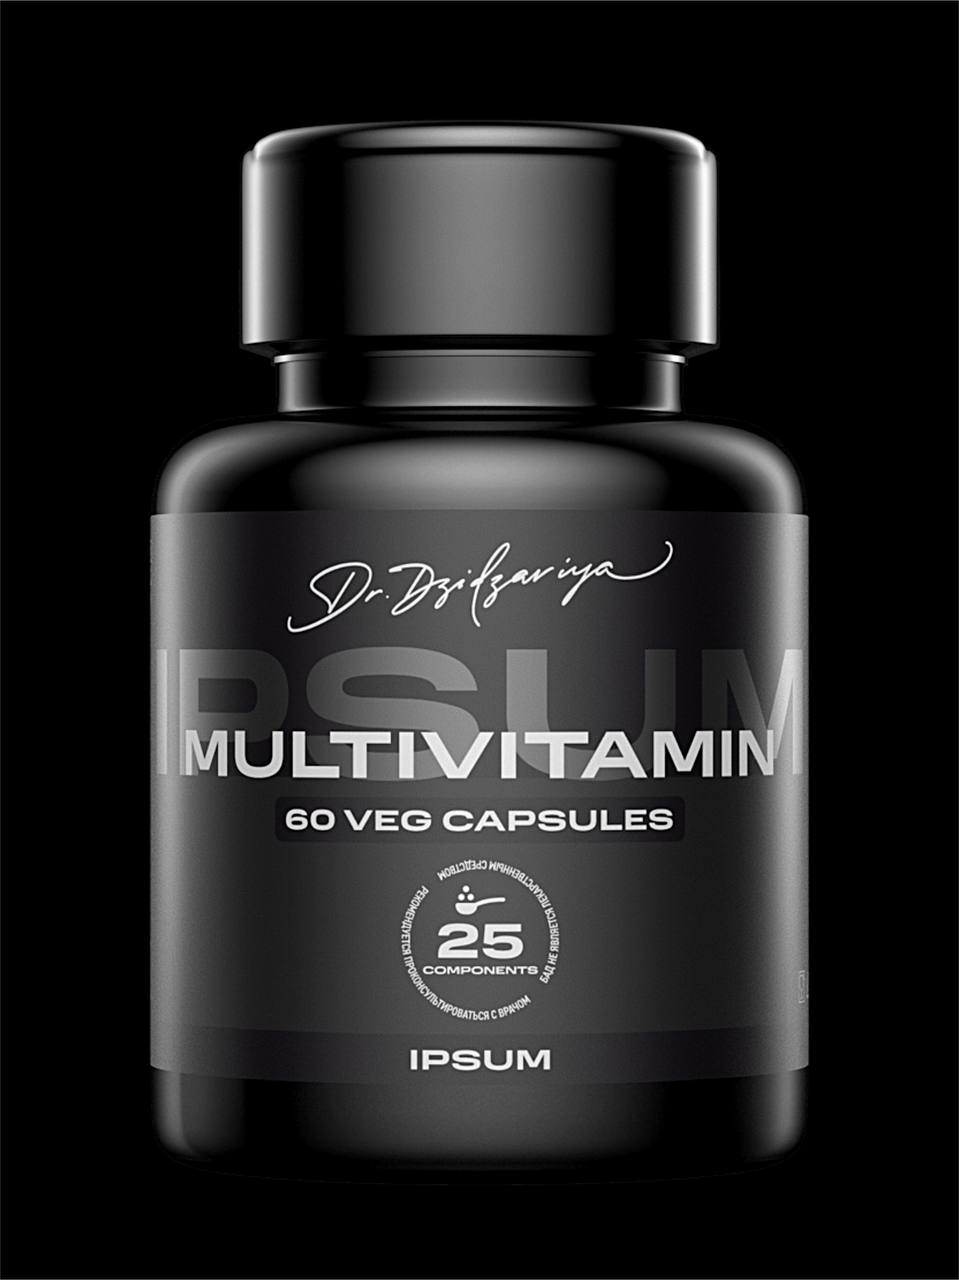 Мультивитамины, Ipsum Vitamin, комплекс витаминов для иммунитета, 60 капсул